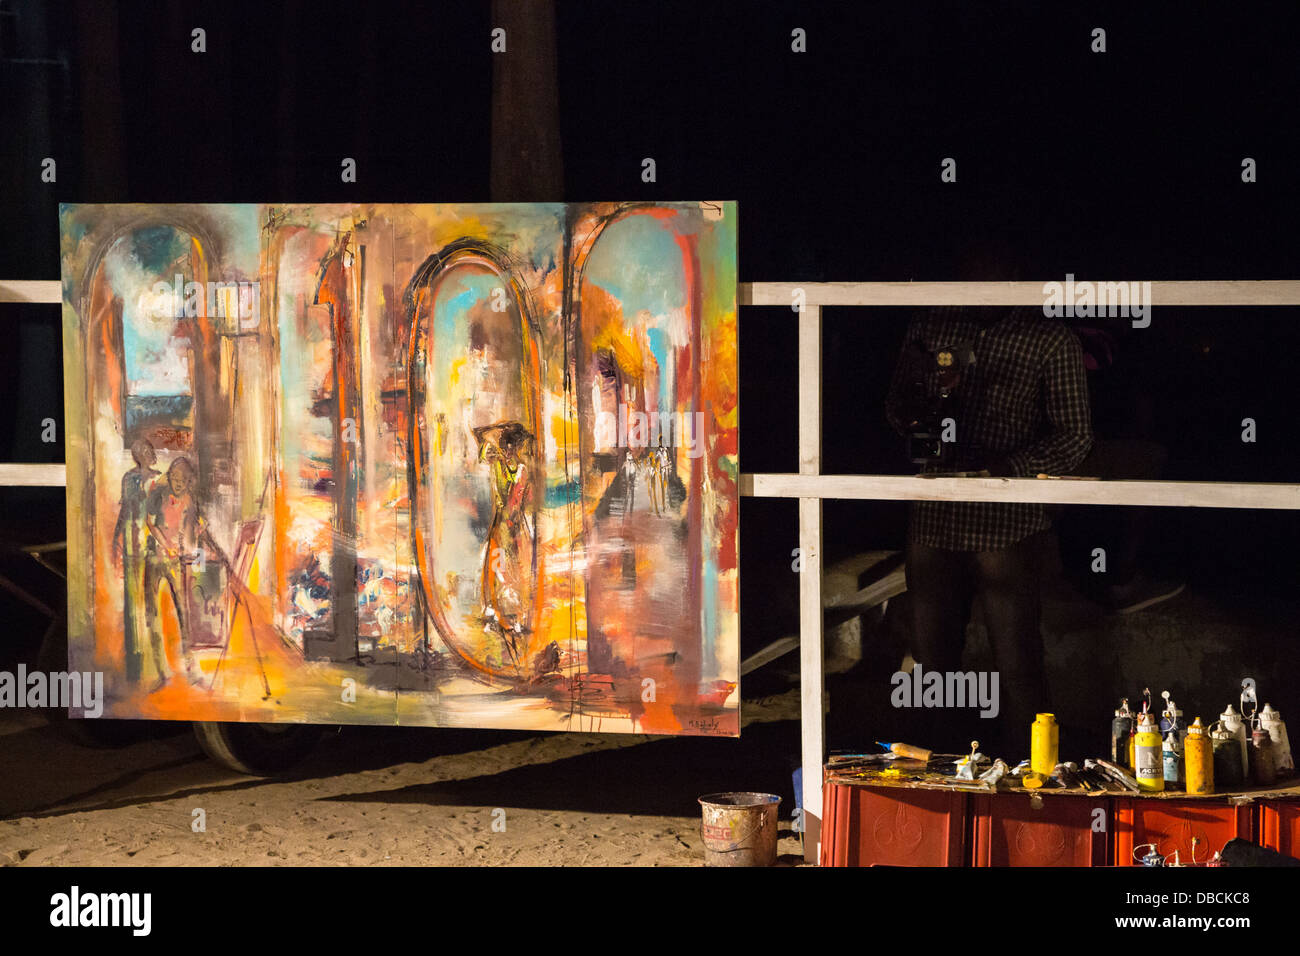 Peinture en mémoire de dixième anniversaire de Regards sur Cours, biennal Art Festival sur l'île de Gorée, Dakar, Sénégal. Banque D'Images